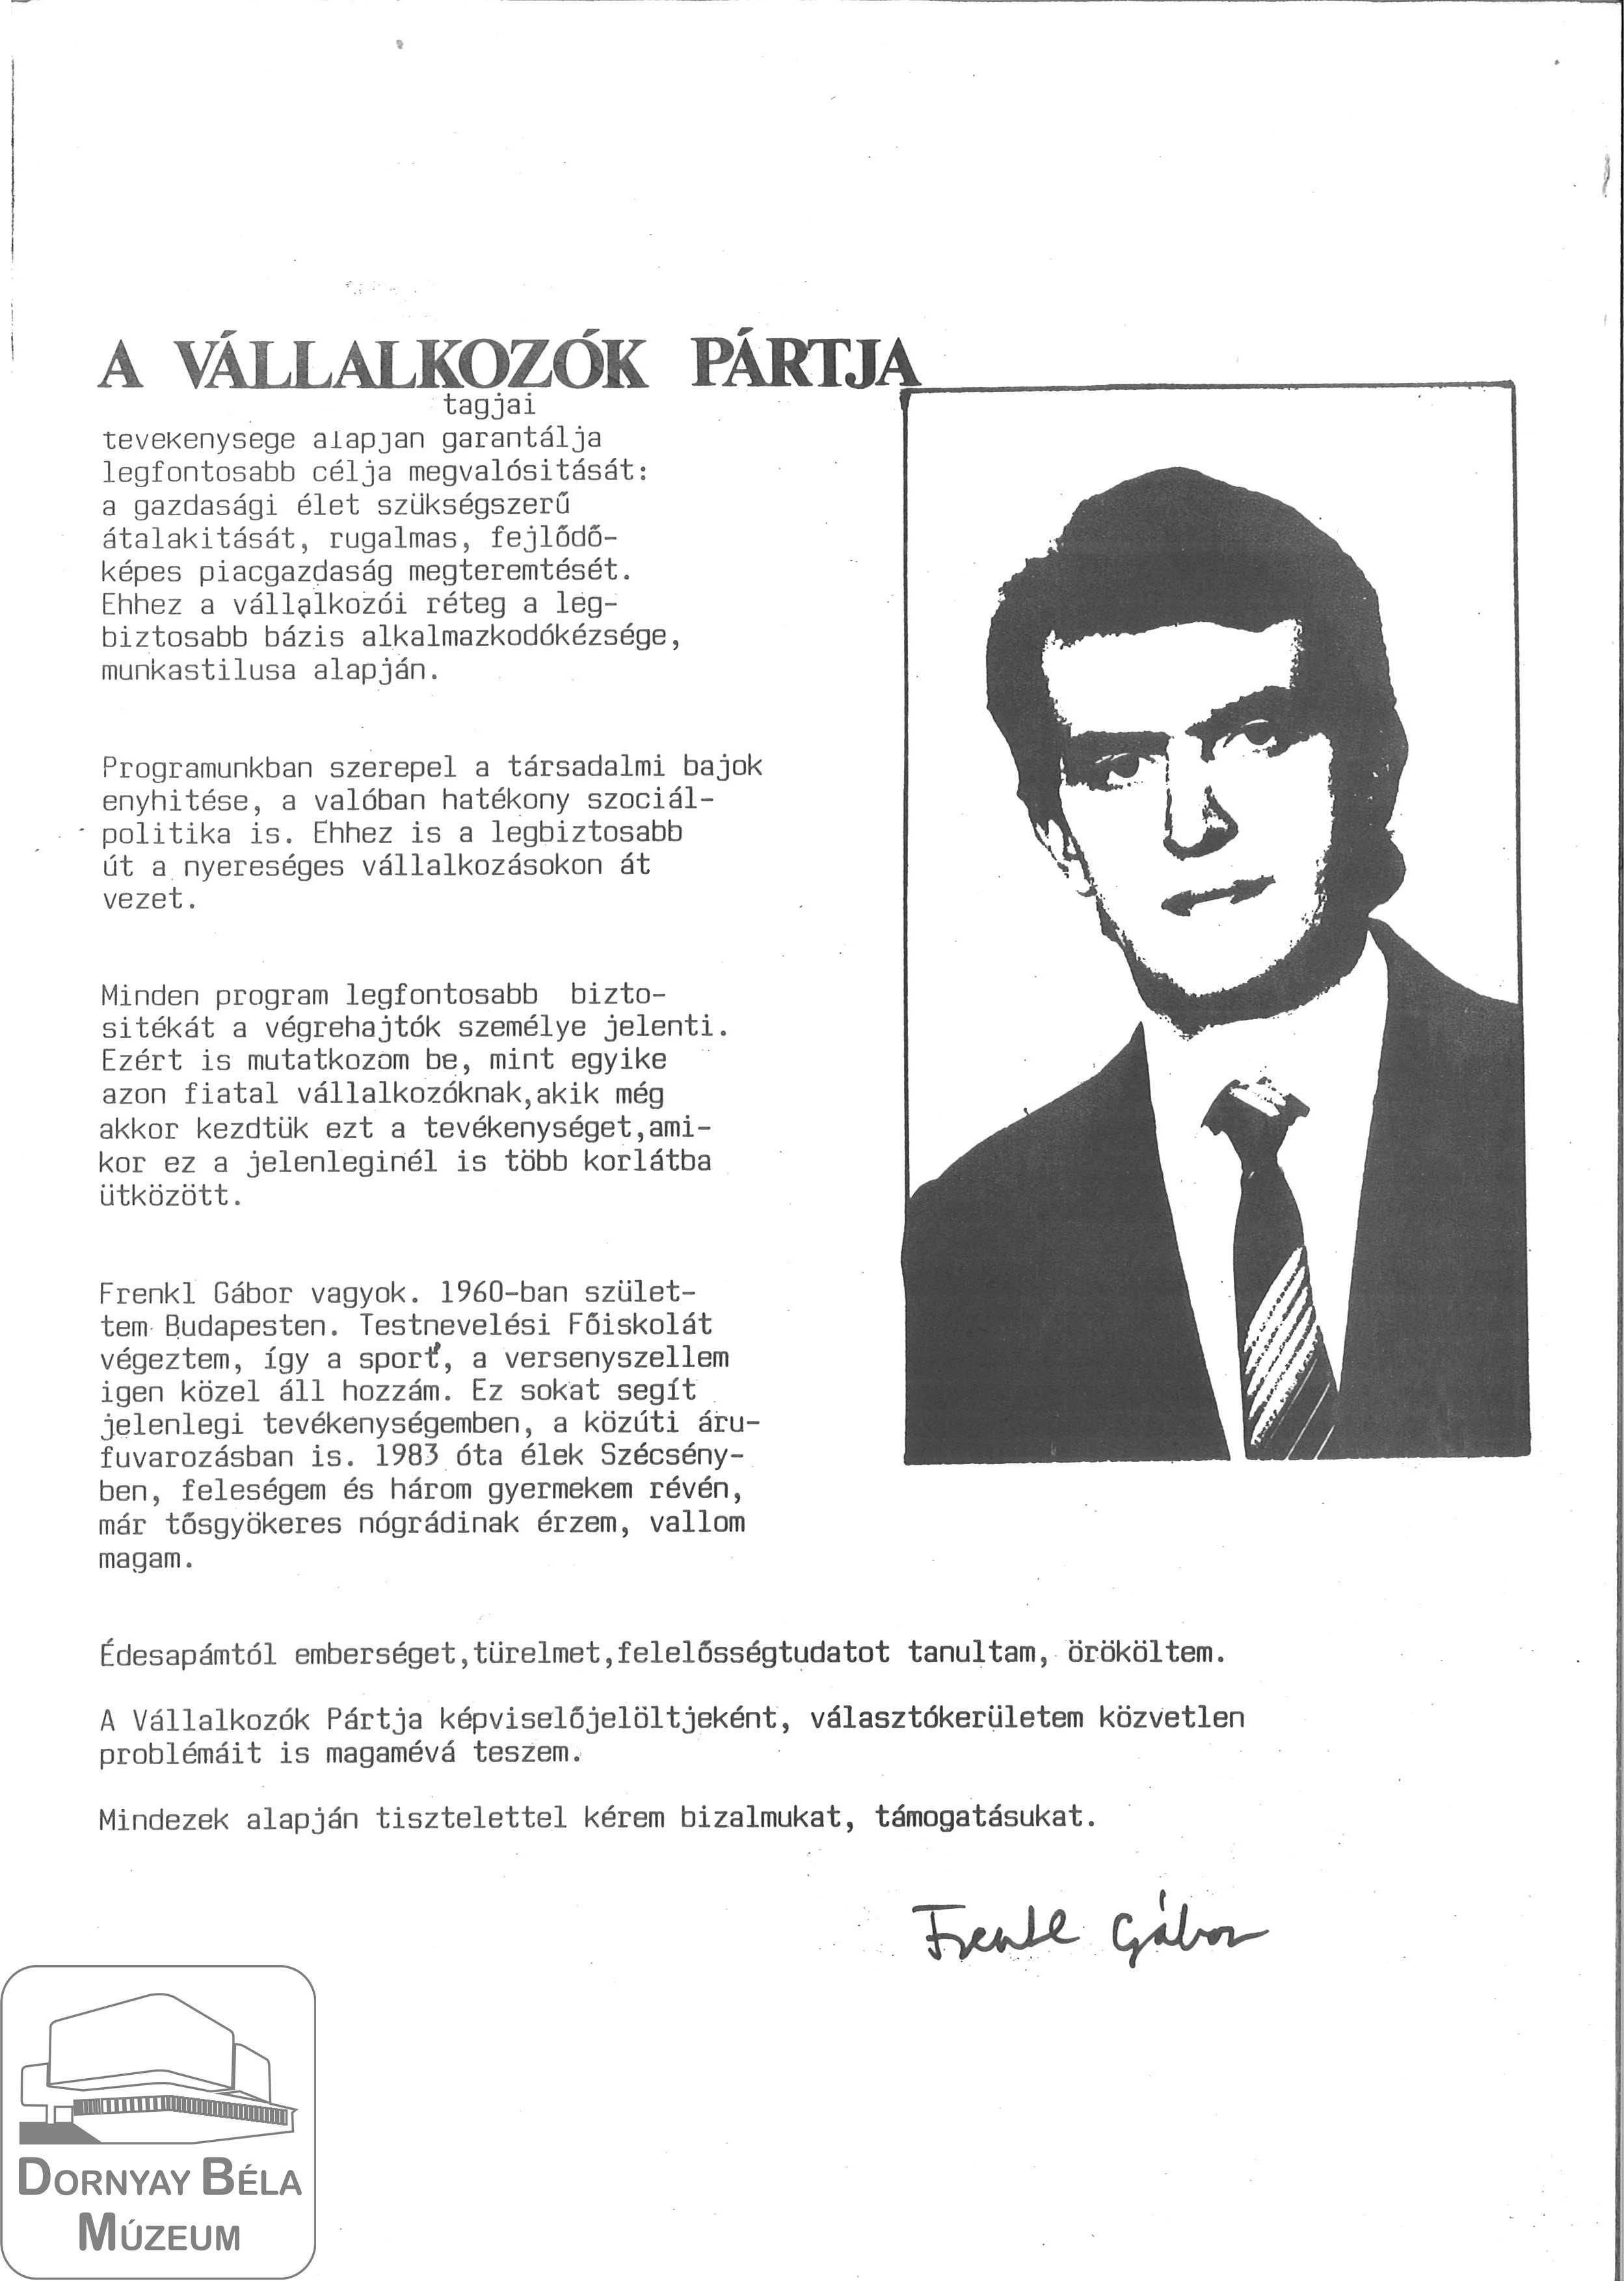 Frenkl Gábor a Vállalkozók Pártja szécsényi jelöltjének programja, életrajza. (Dornyay Béla Múzeum, Salgótarján CC BY-NC-SA)